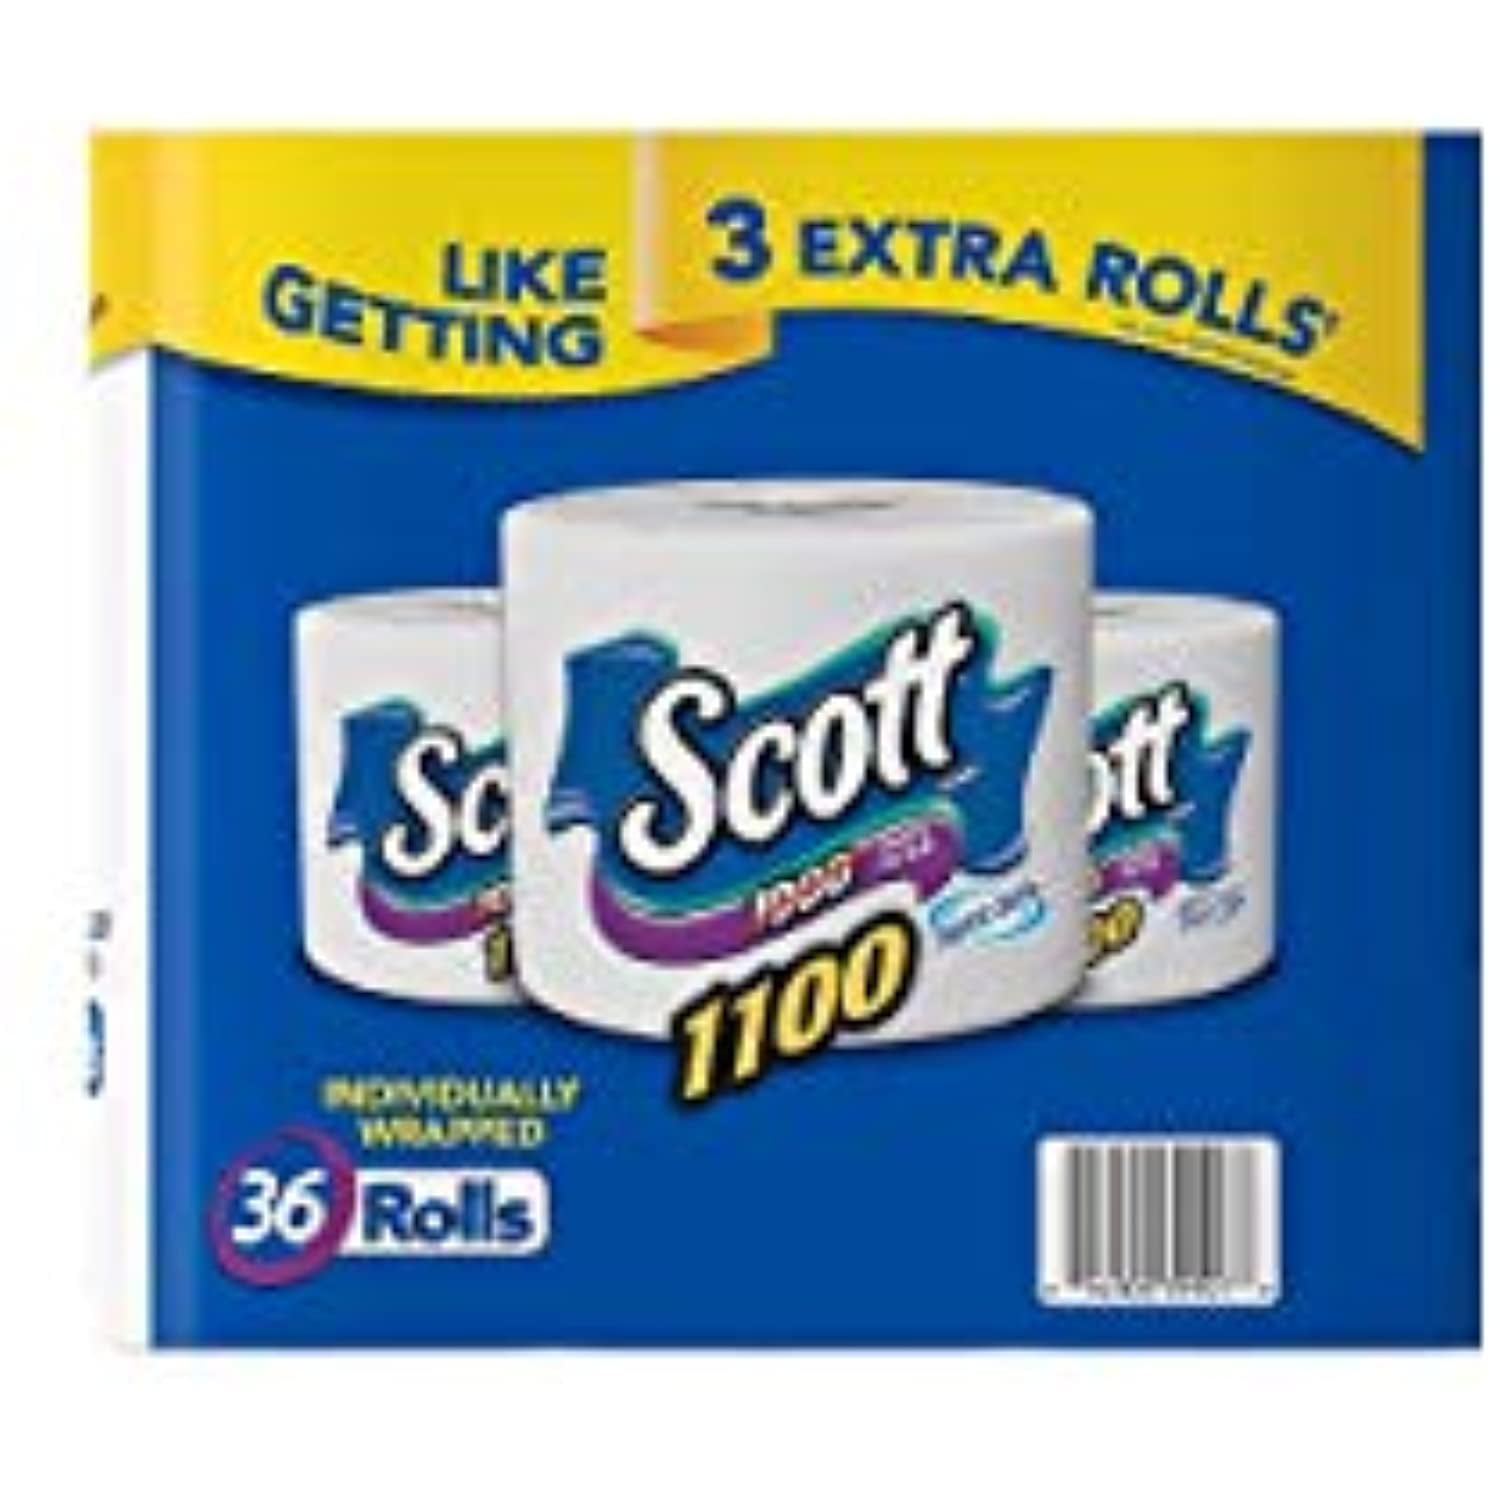 Scott 1100 Unscented Bath Tissue, 36 Rolls, 36 x 1100 - 1